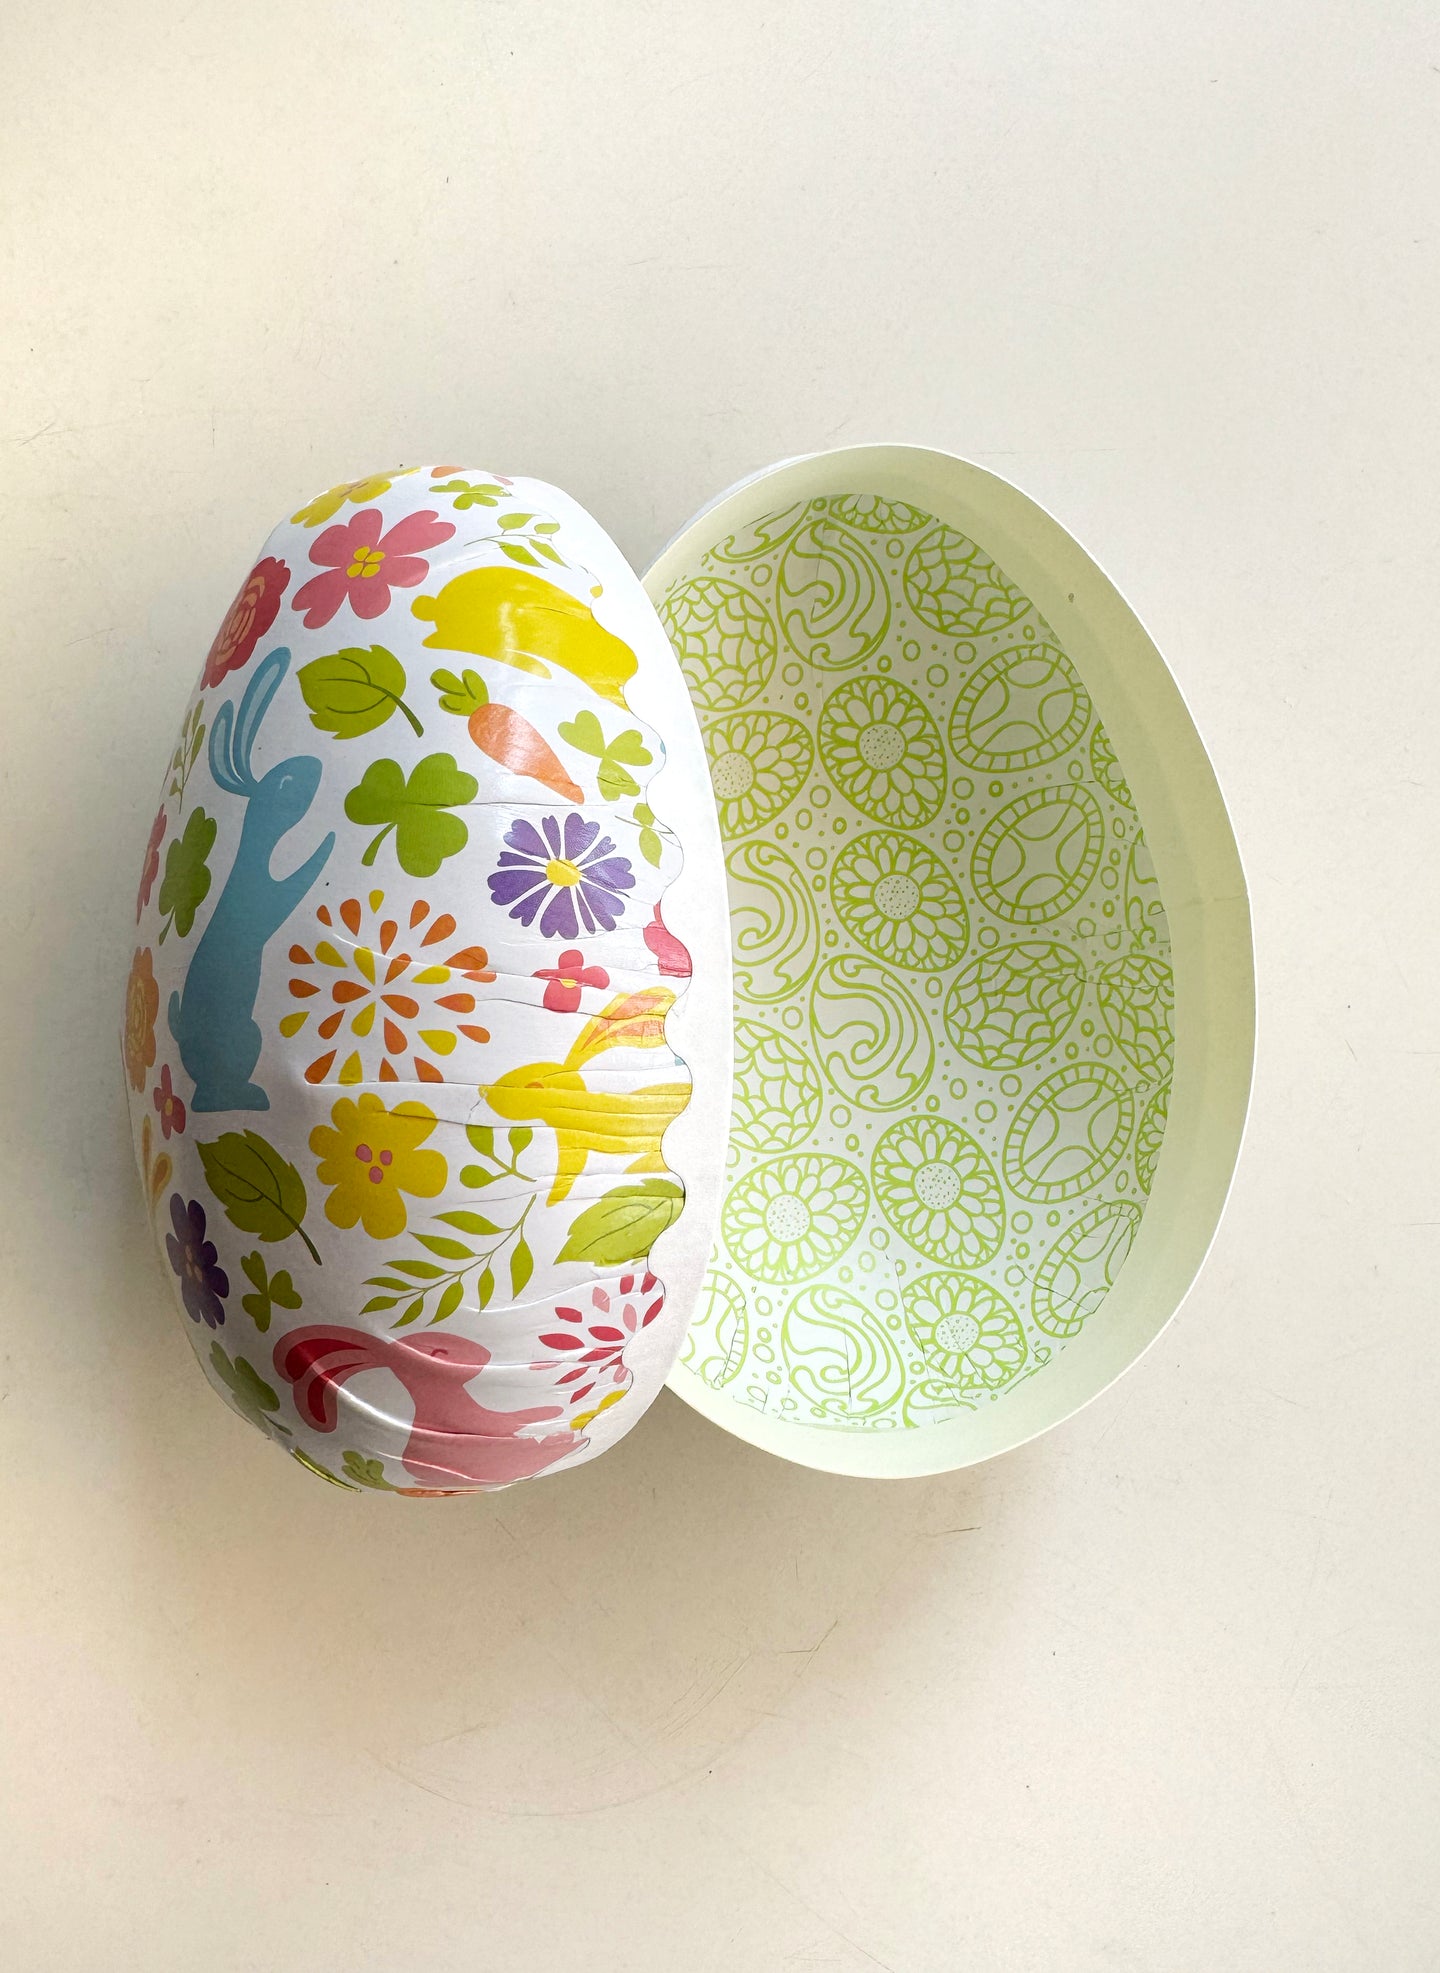 Påskägg – Bunny Easter Egg / Large